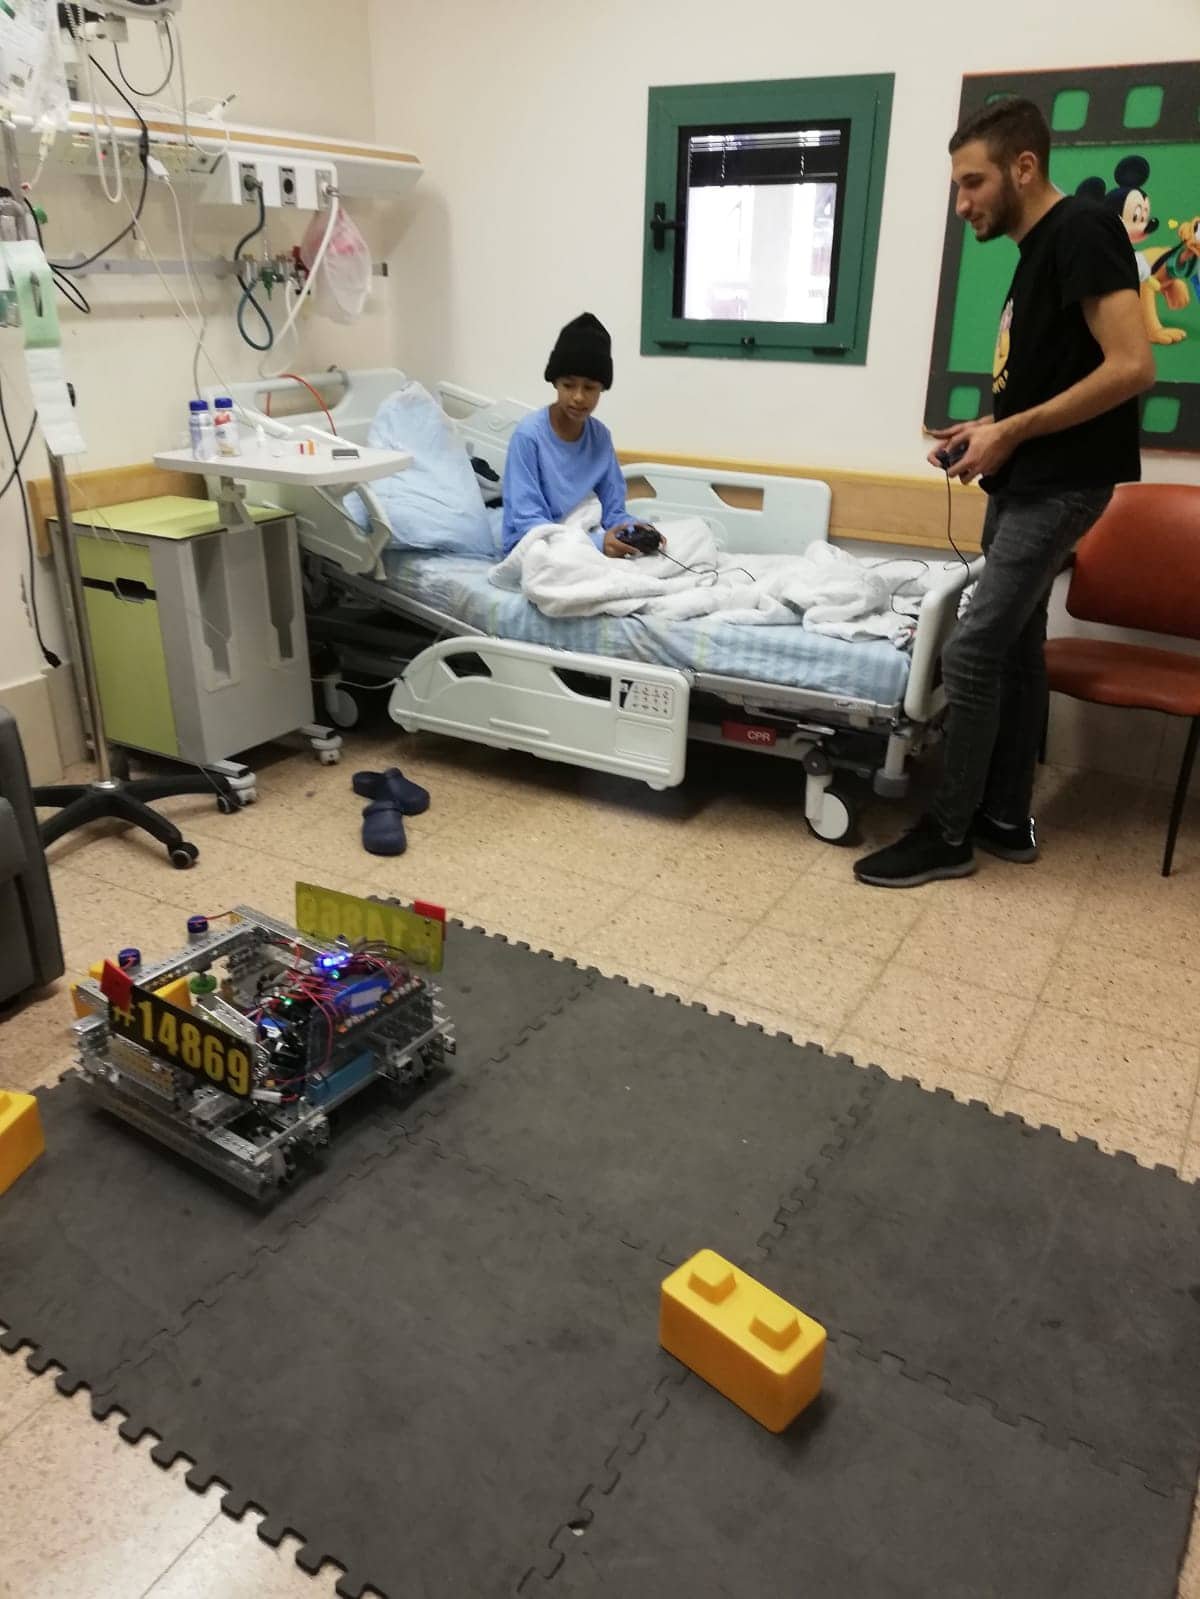 طلاب من يافة الناصرة بين دمج الروبوتات والعمل التطوعي والإنساني في المستشفيات -2